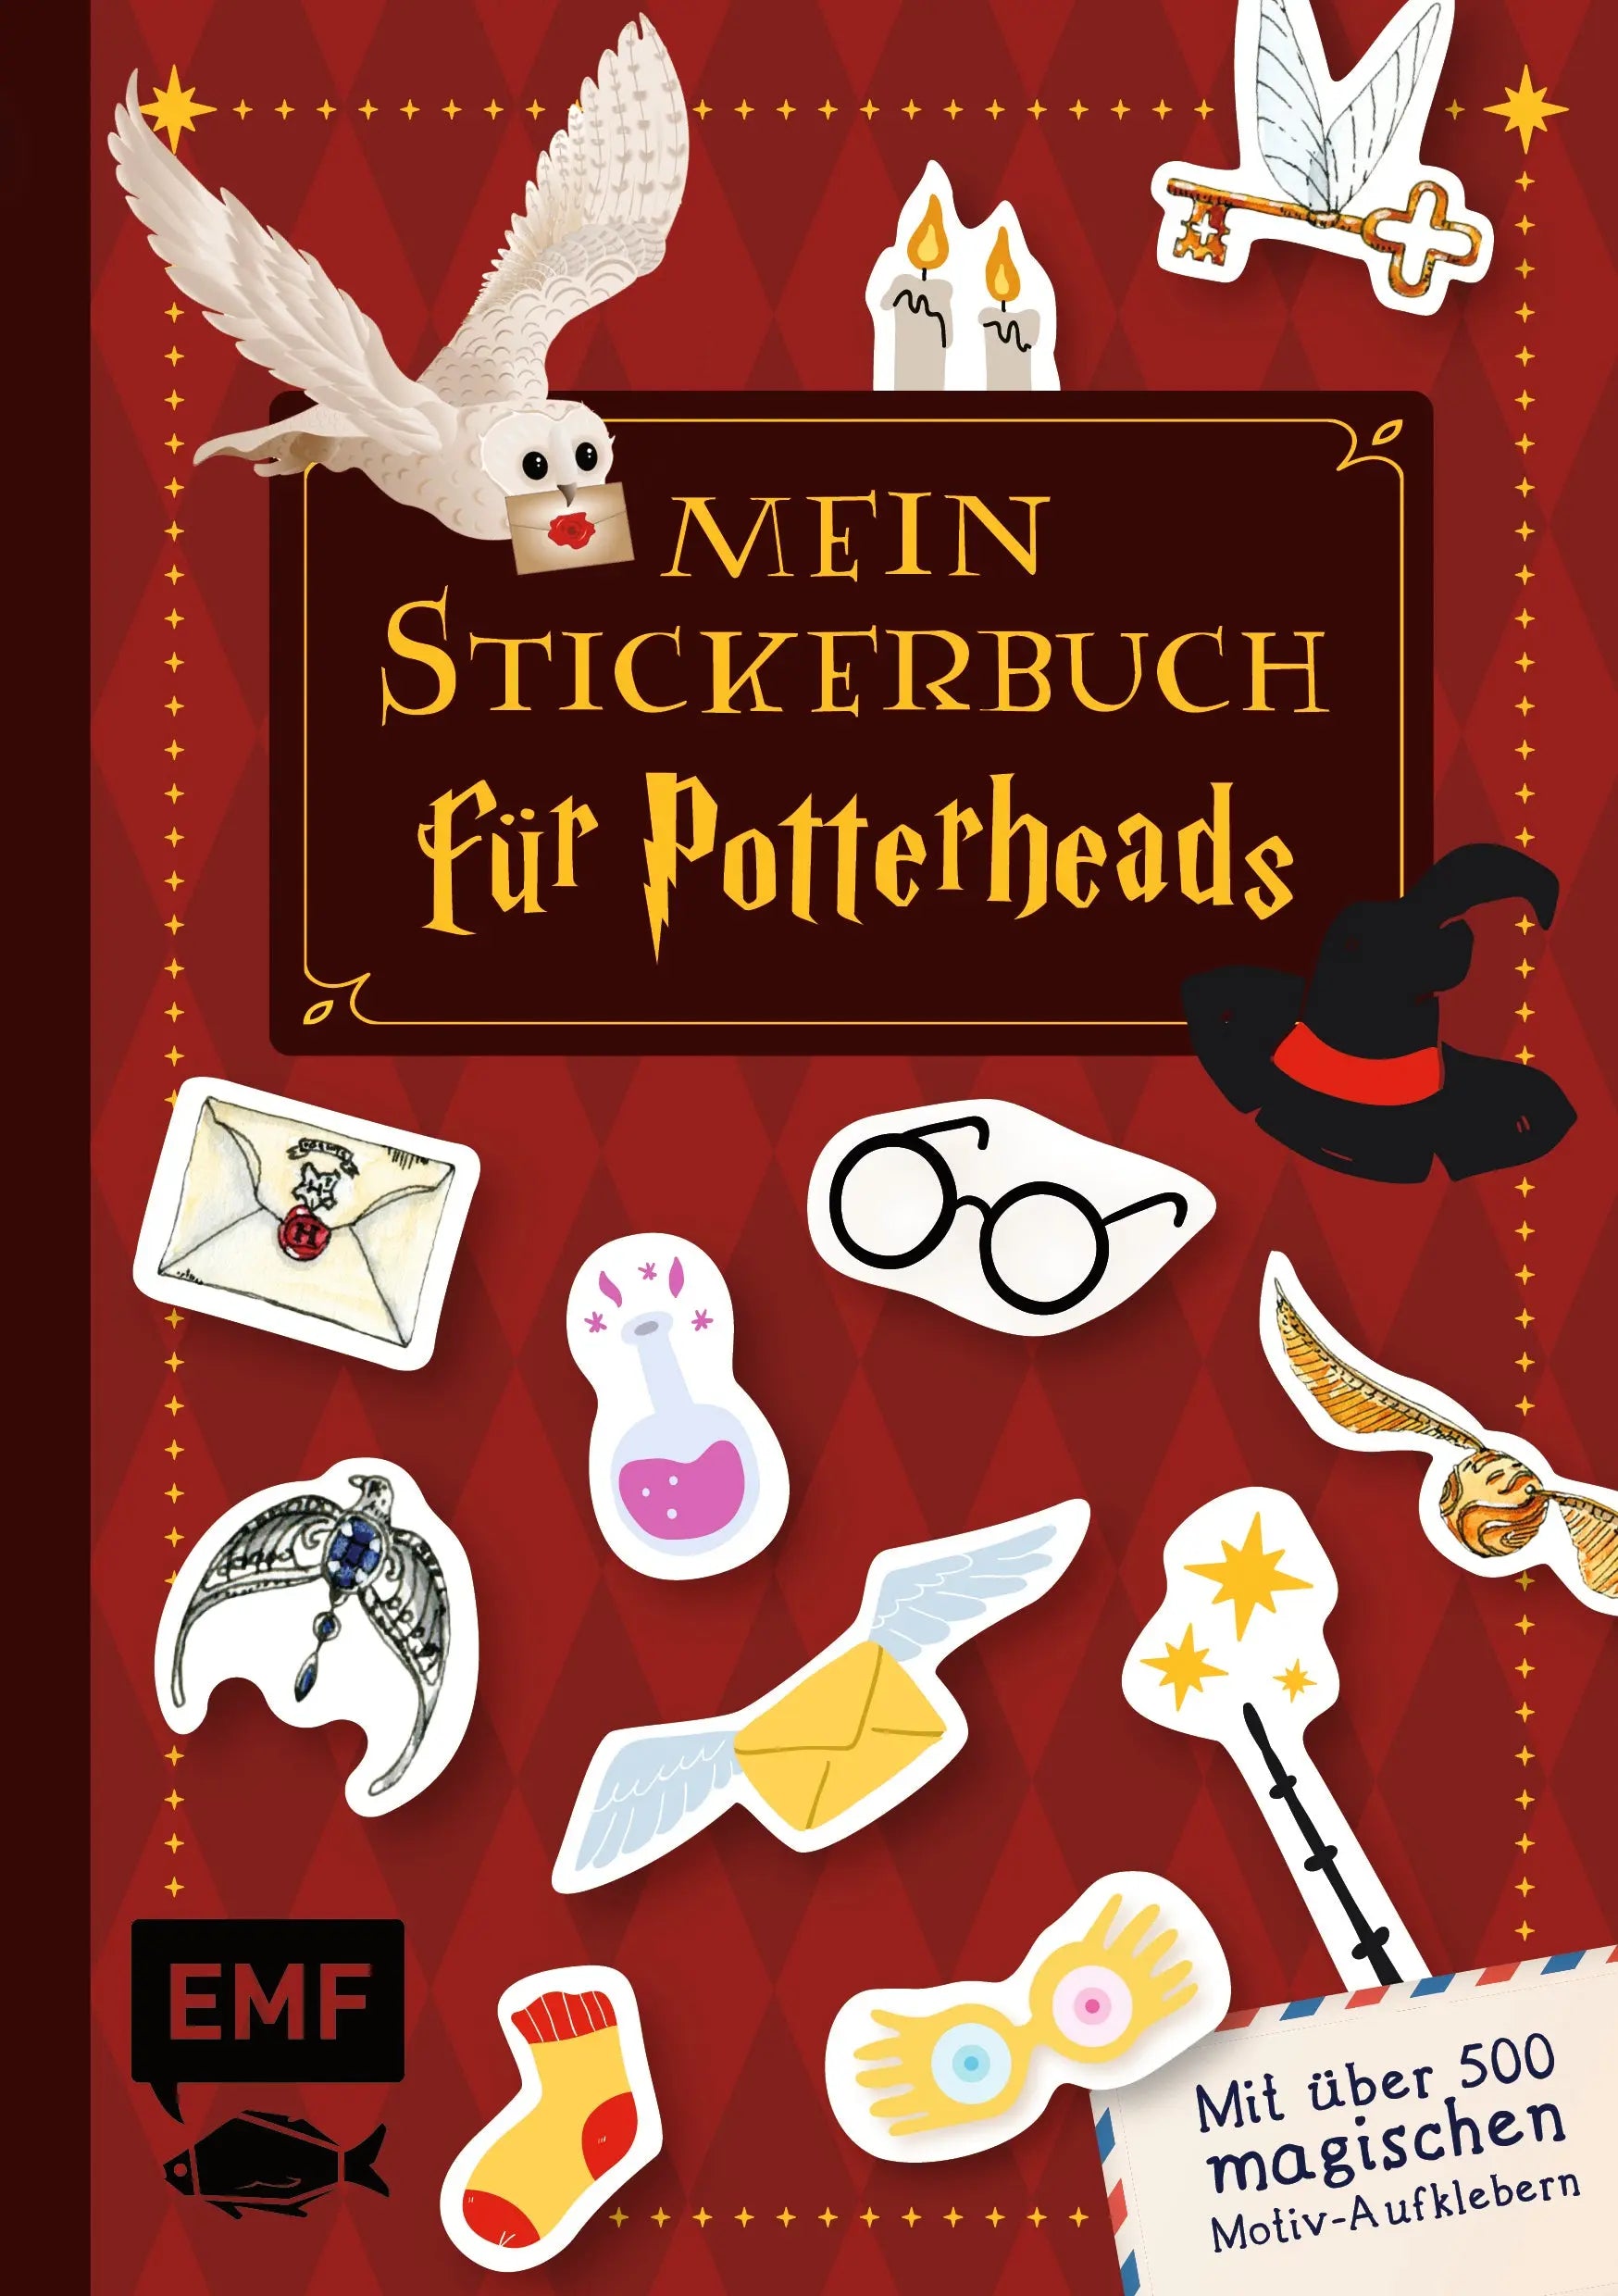 Mein Stickerbuch für Potterheads EMF Verlag